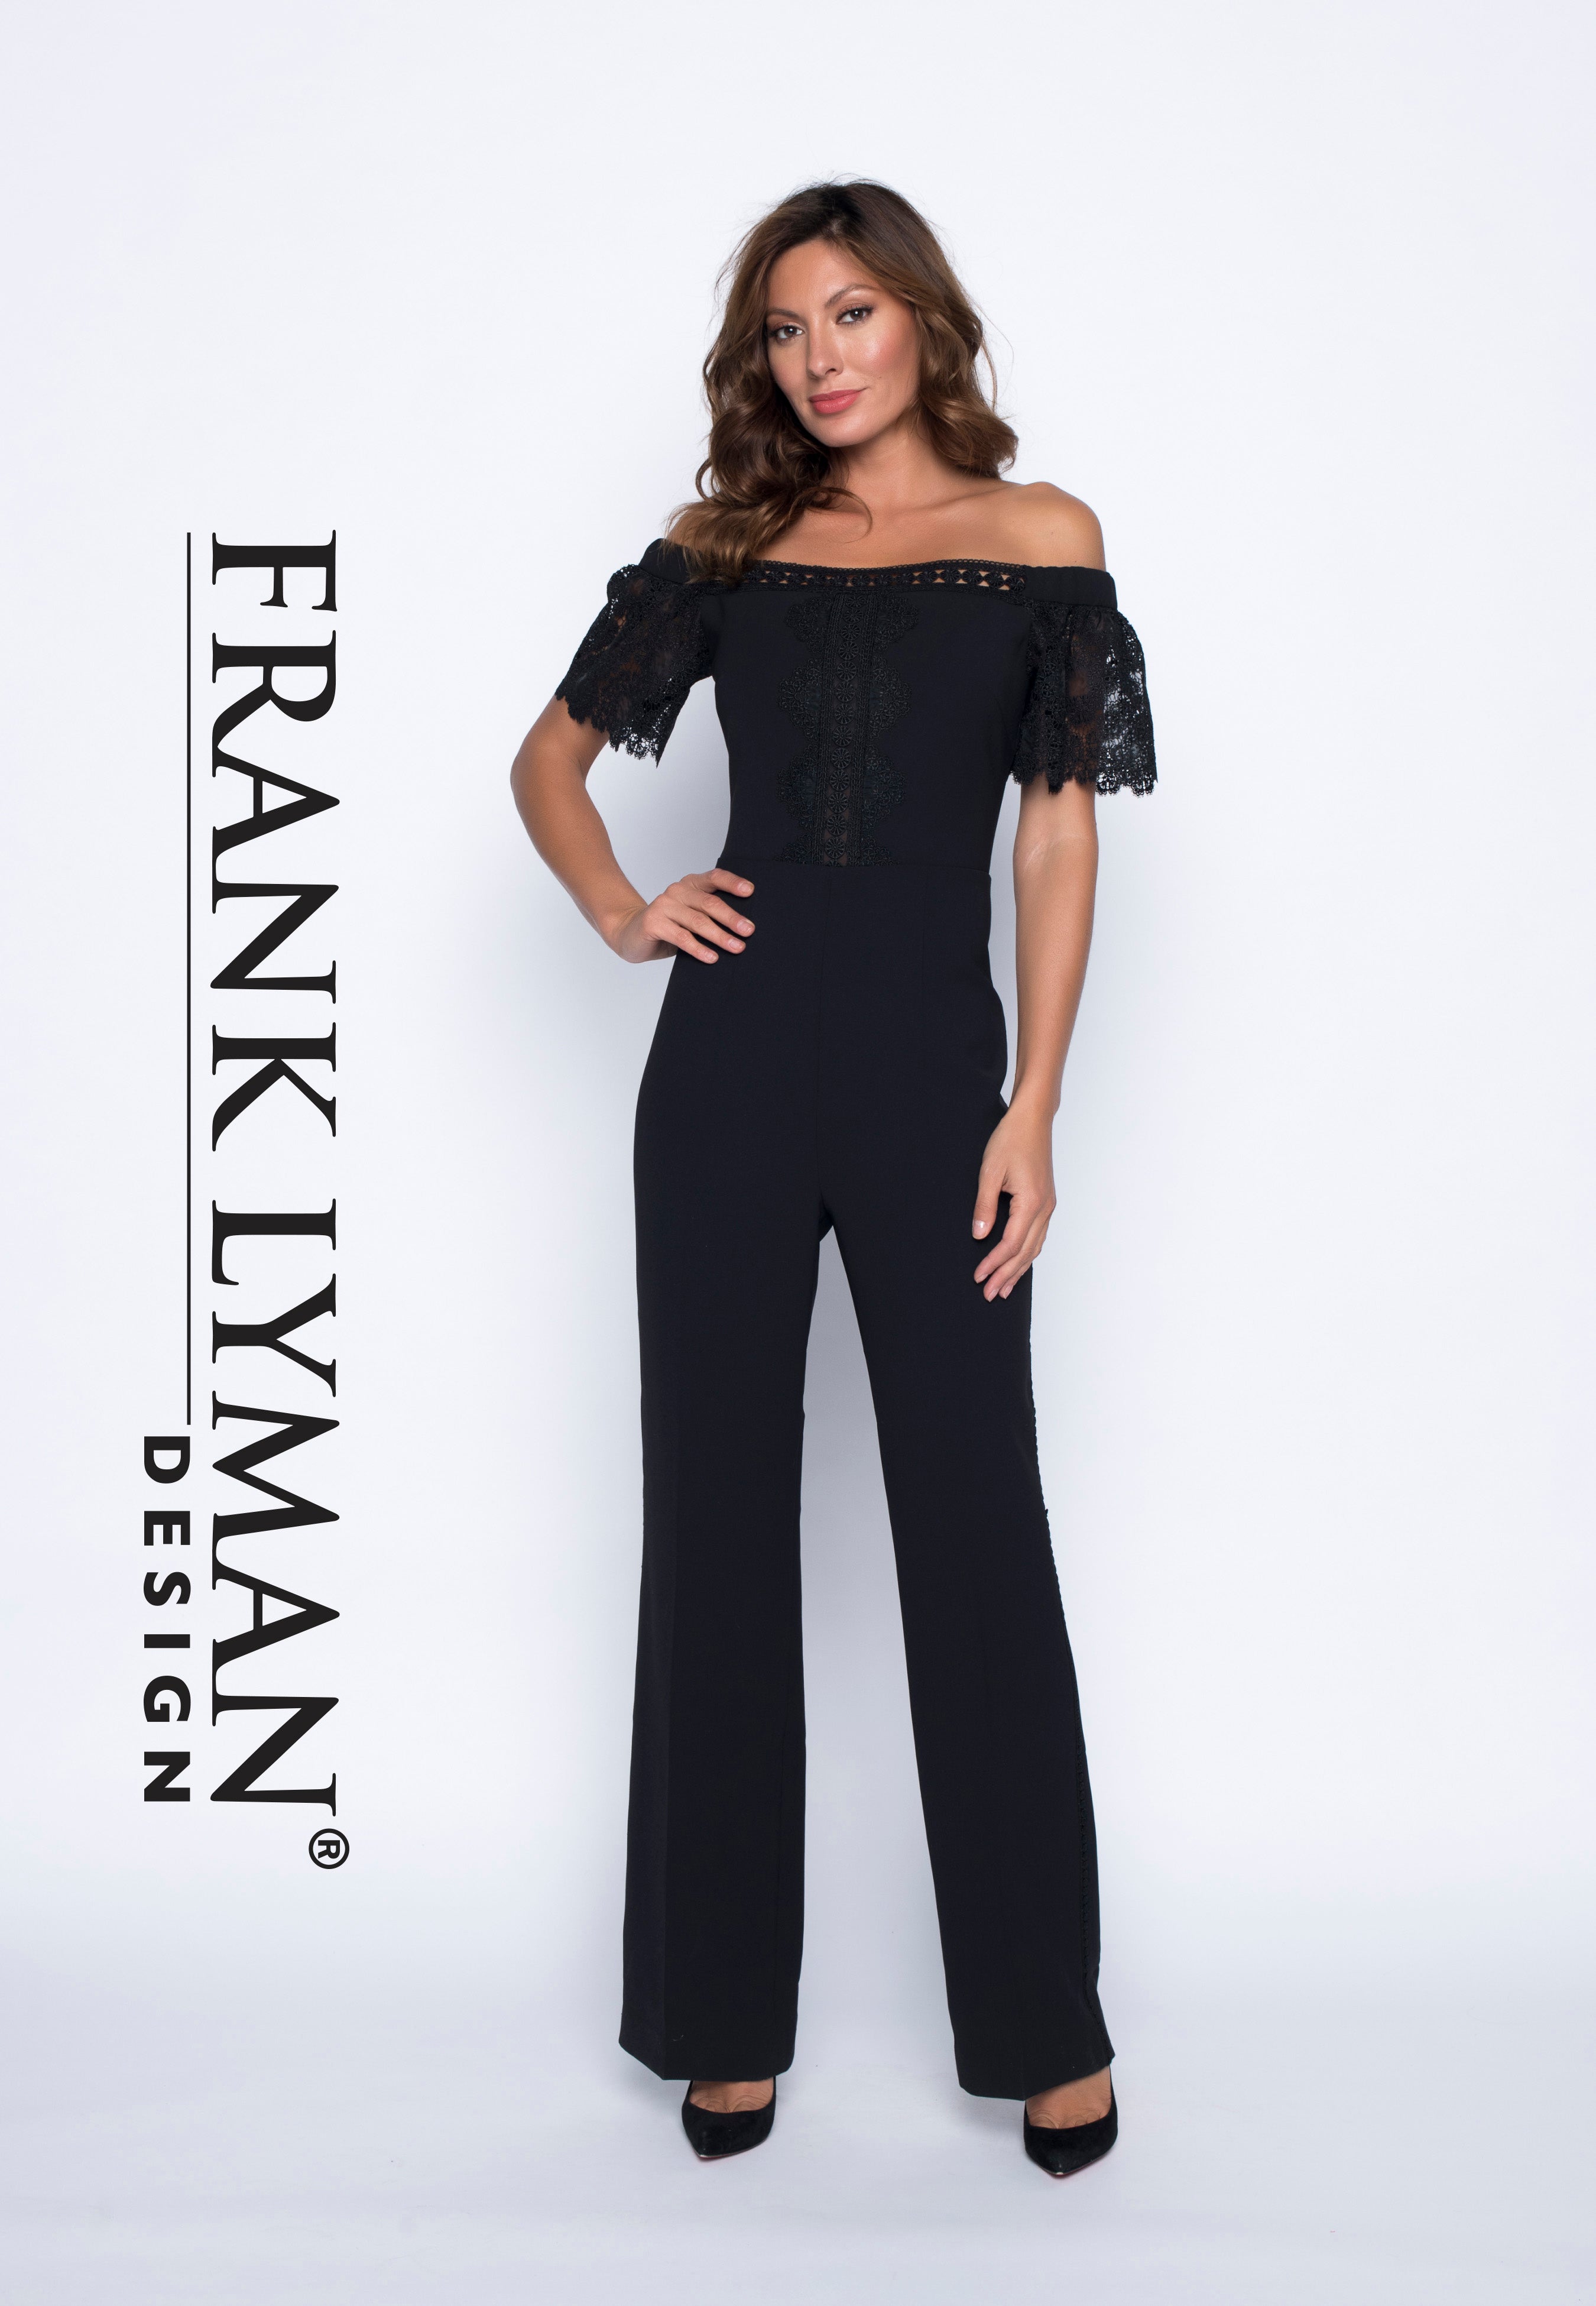 Frank Lyman Dresses,Frank Lyman Design,Frank Lyman Tops, Frank Lyman Online Shop, Frank Lyman Clothing Canada